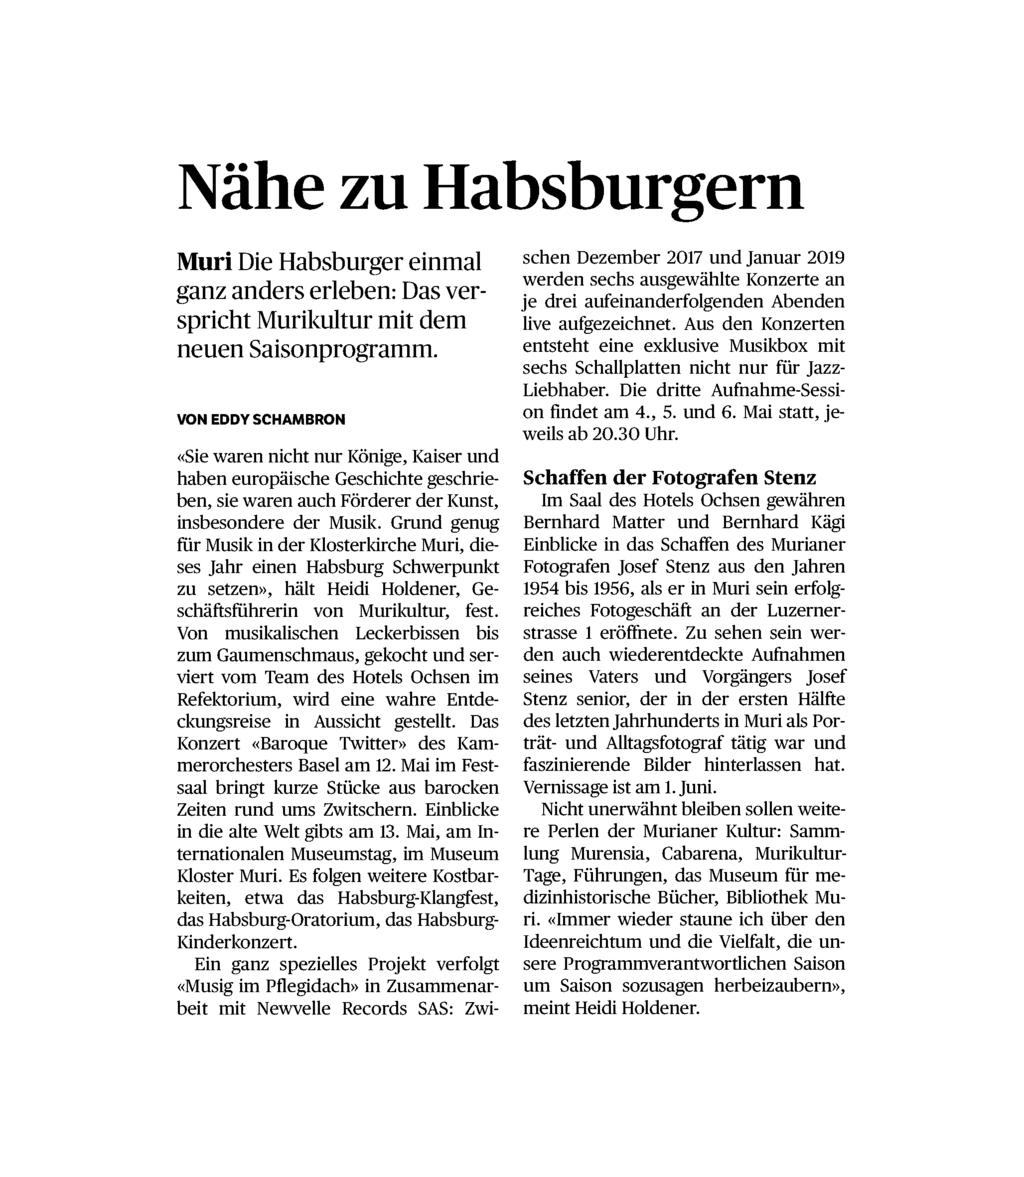 017 Referenz: 69126814 Ausschnitt Seite: 1/1 Nähe zu Habsburgern Muri Die Habsburger einmal ganz anders erleben: Das verspricht Murikultur mit dem neuen Saisonprogramm.